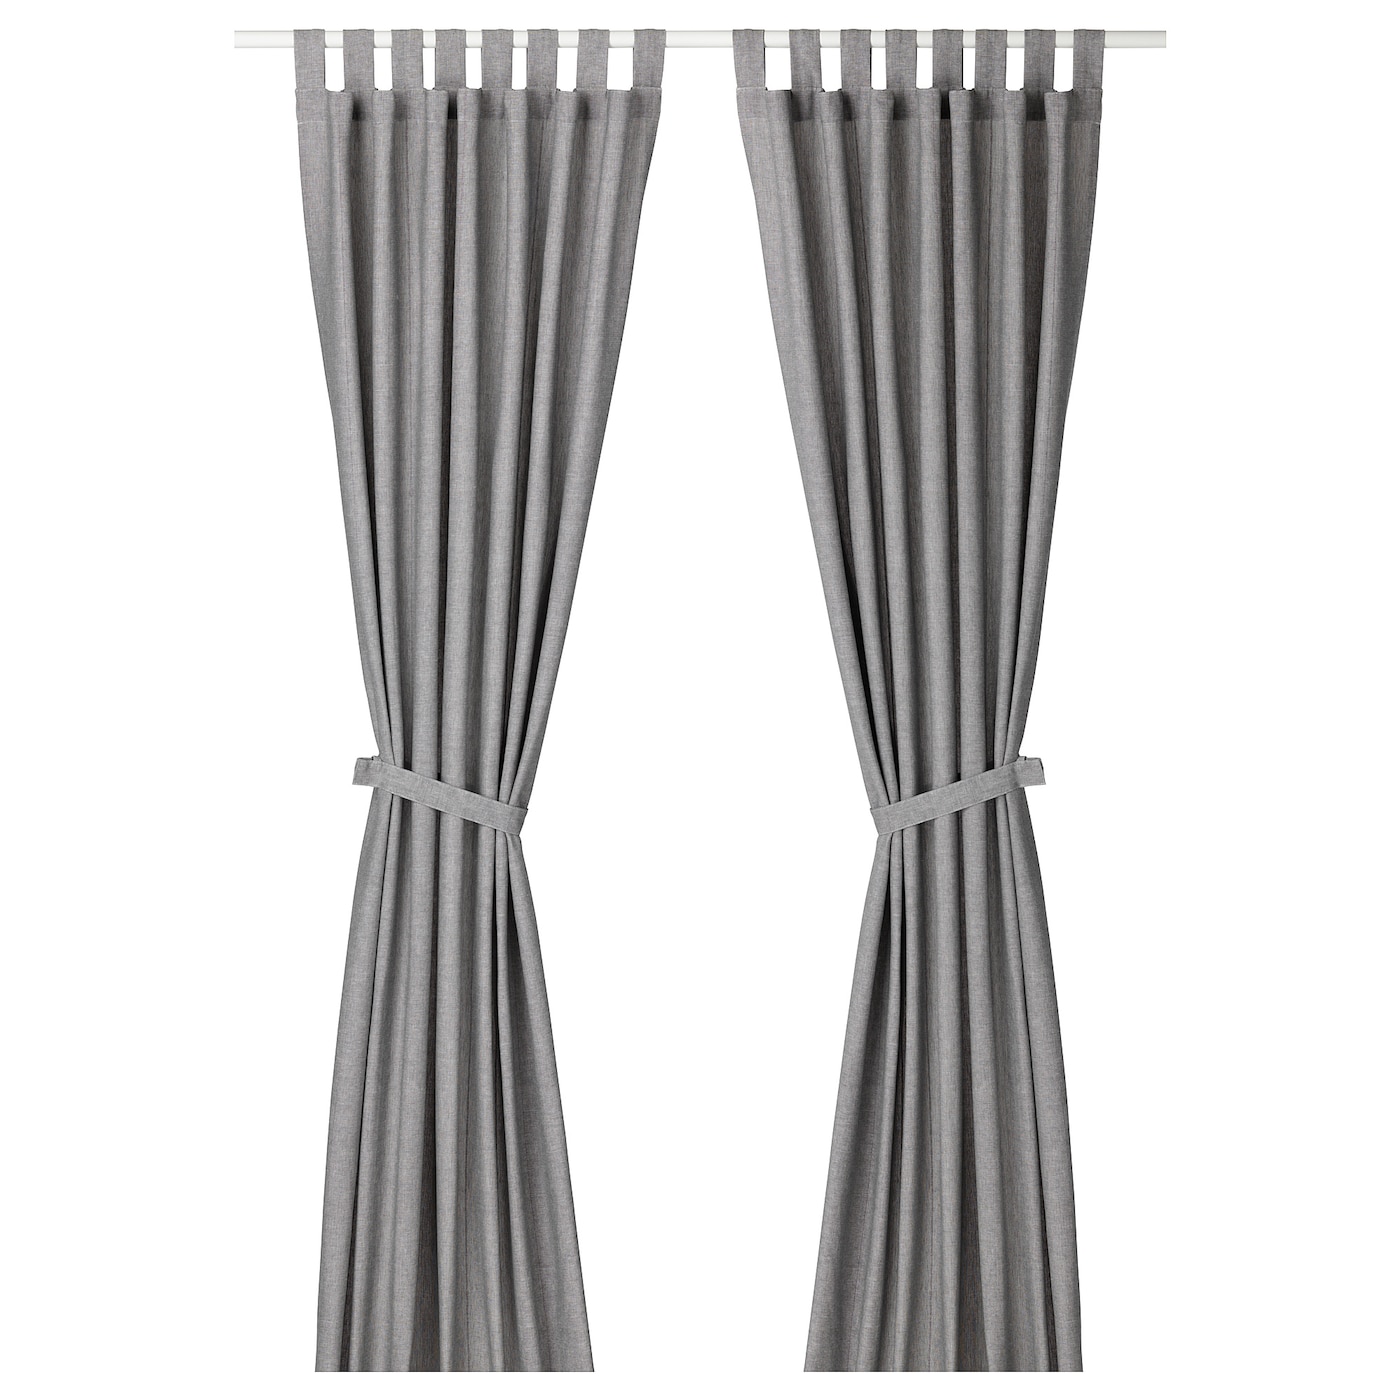 lenda-curtains-with-tie-backs-1-pair-grey__0599200_pe677975_s5.jpg